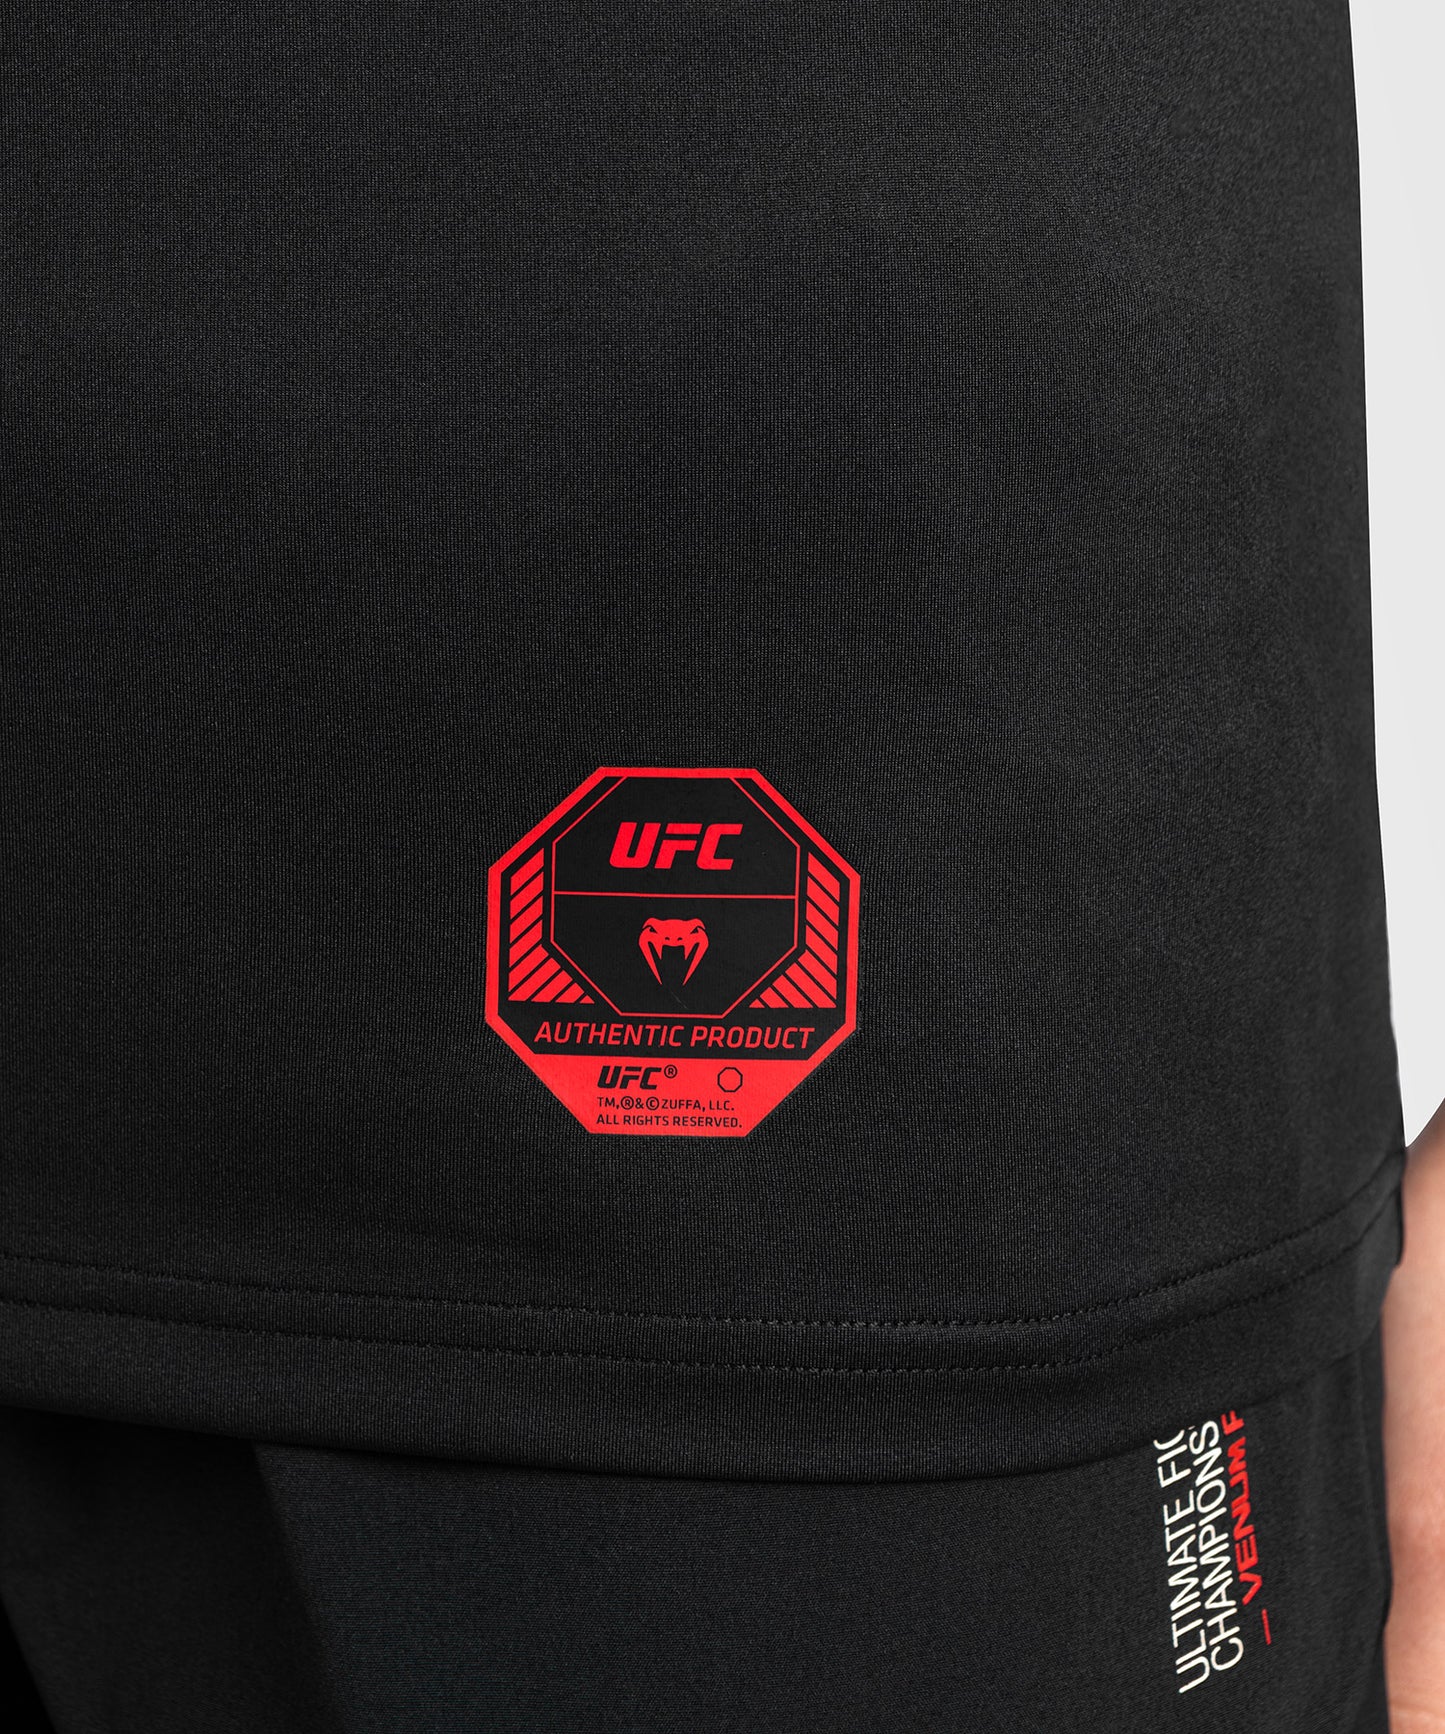 UFC Adrenaline by Venum Fight Week Women's Dry-Tech T-Shirt - Schwarz